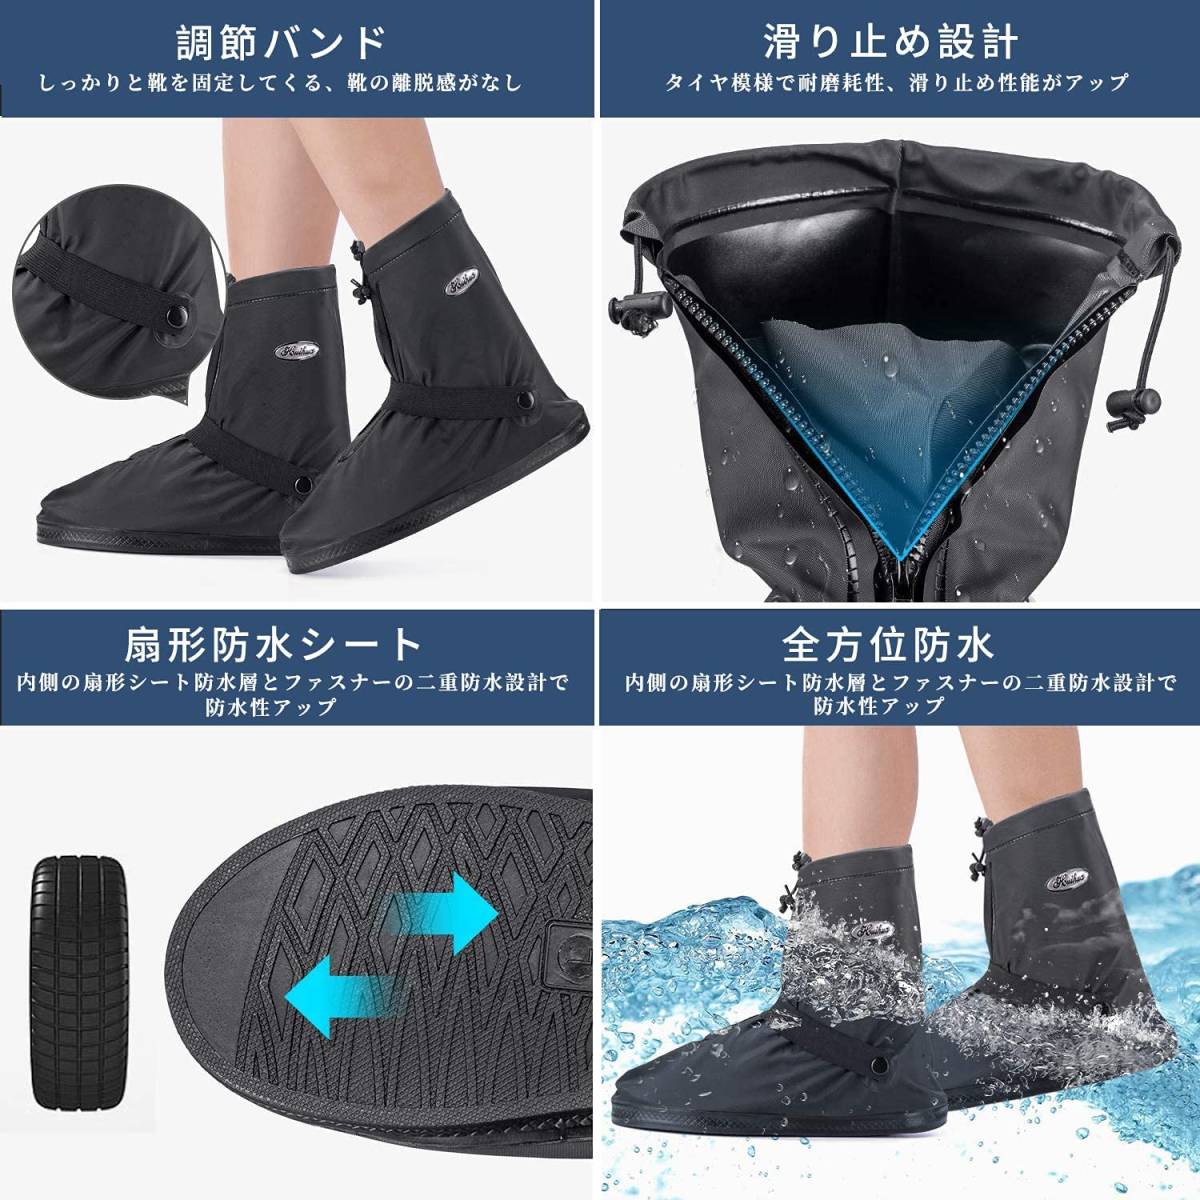 シューズカバー XL 滑りにくい 防水 レディース メンズ 靴 靴の上から レイン カバー 雨 雪 泥 靴保護 レインブーツ 梅雨対策_画像9